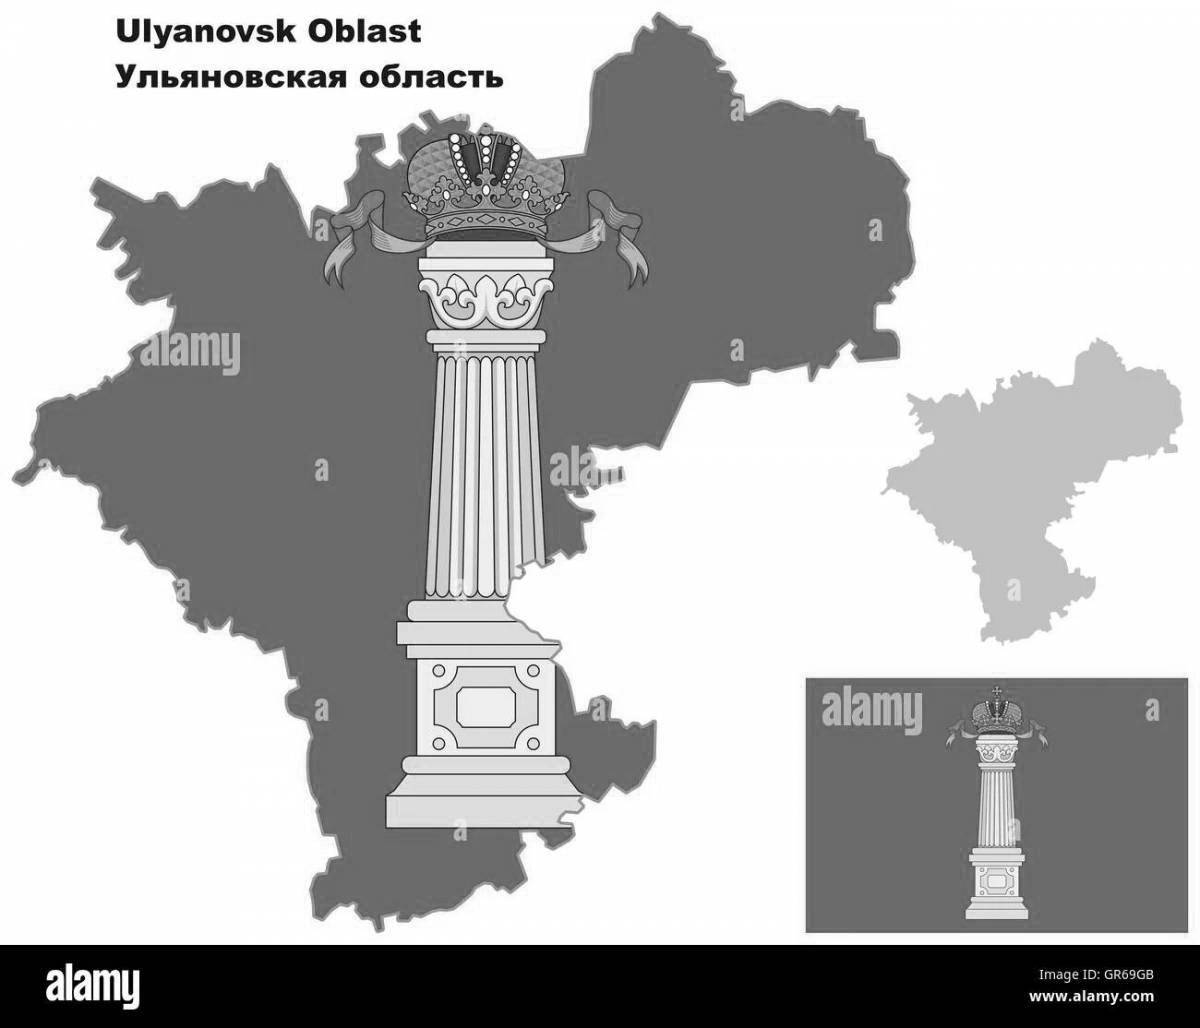 Фото Увлекательная раскраска флаг ульяновской области